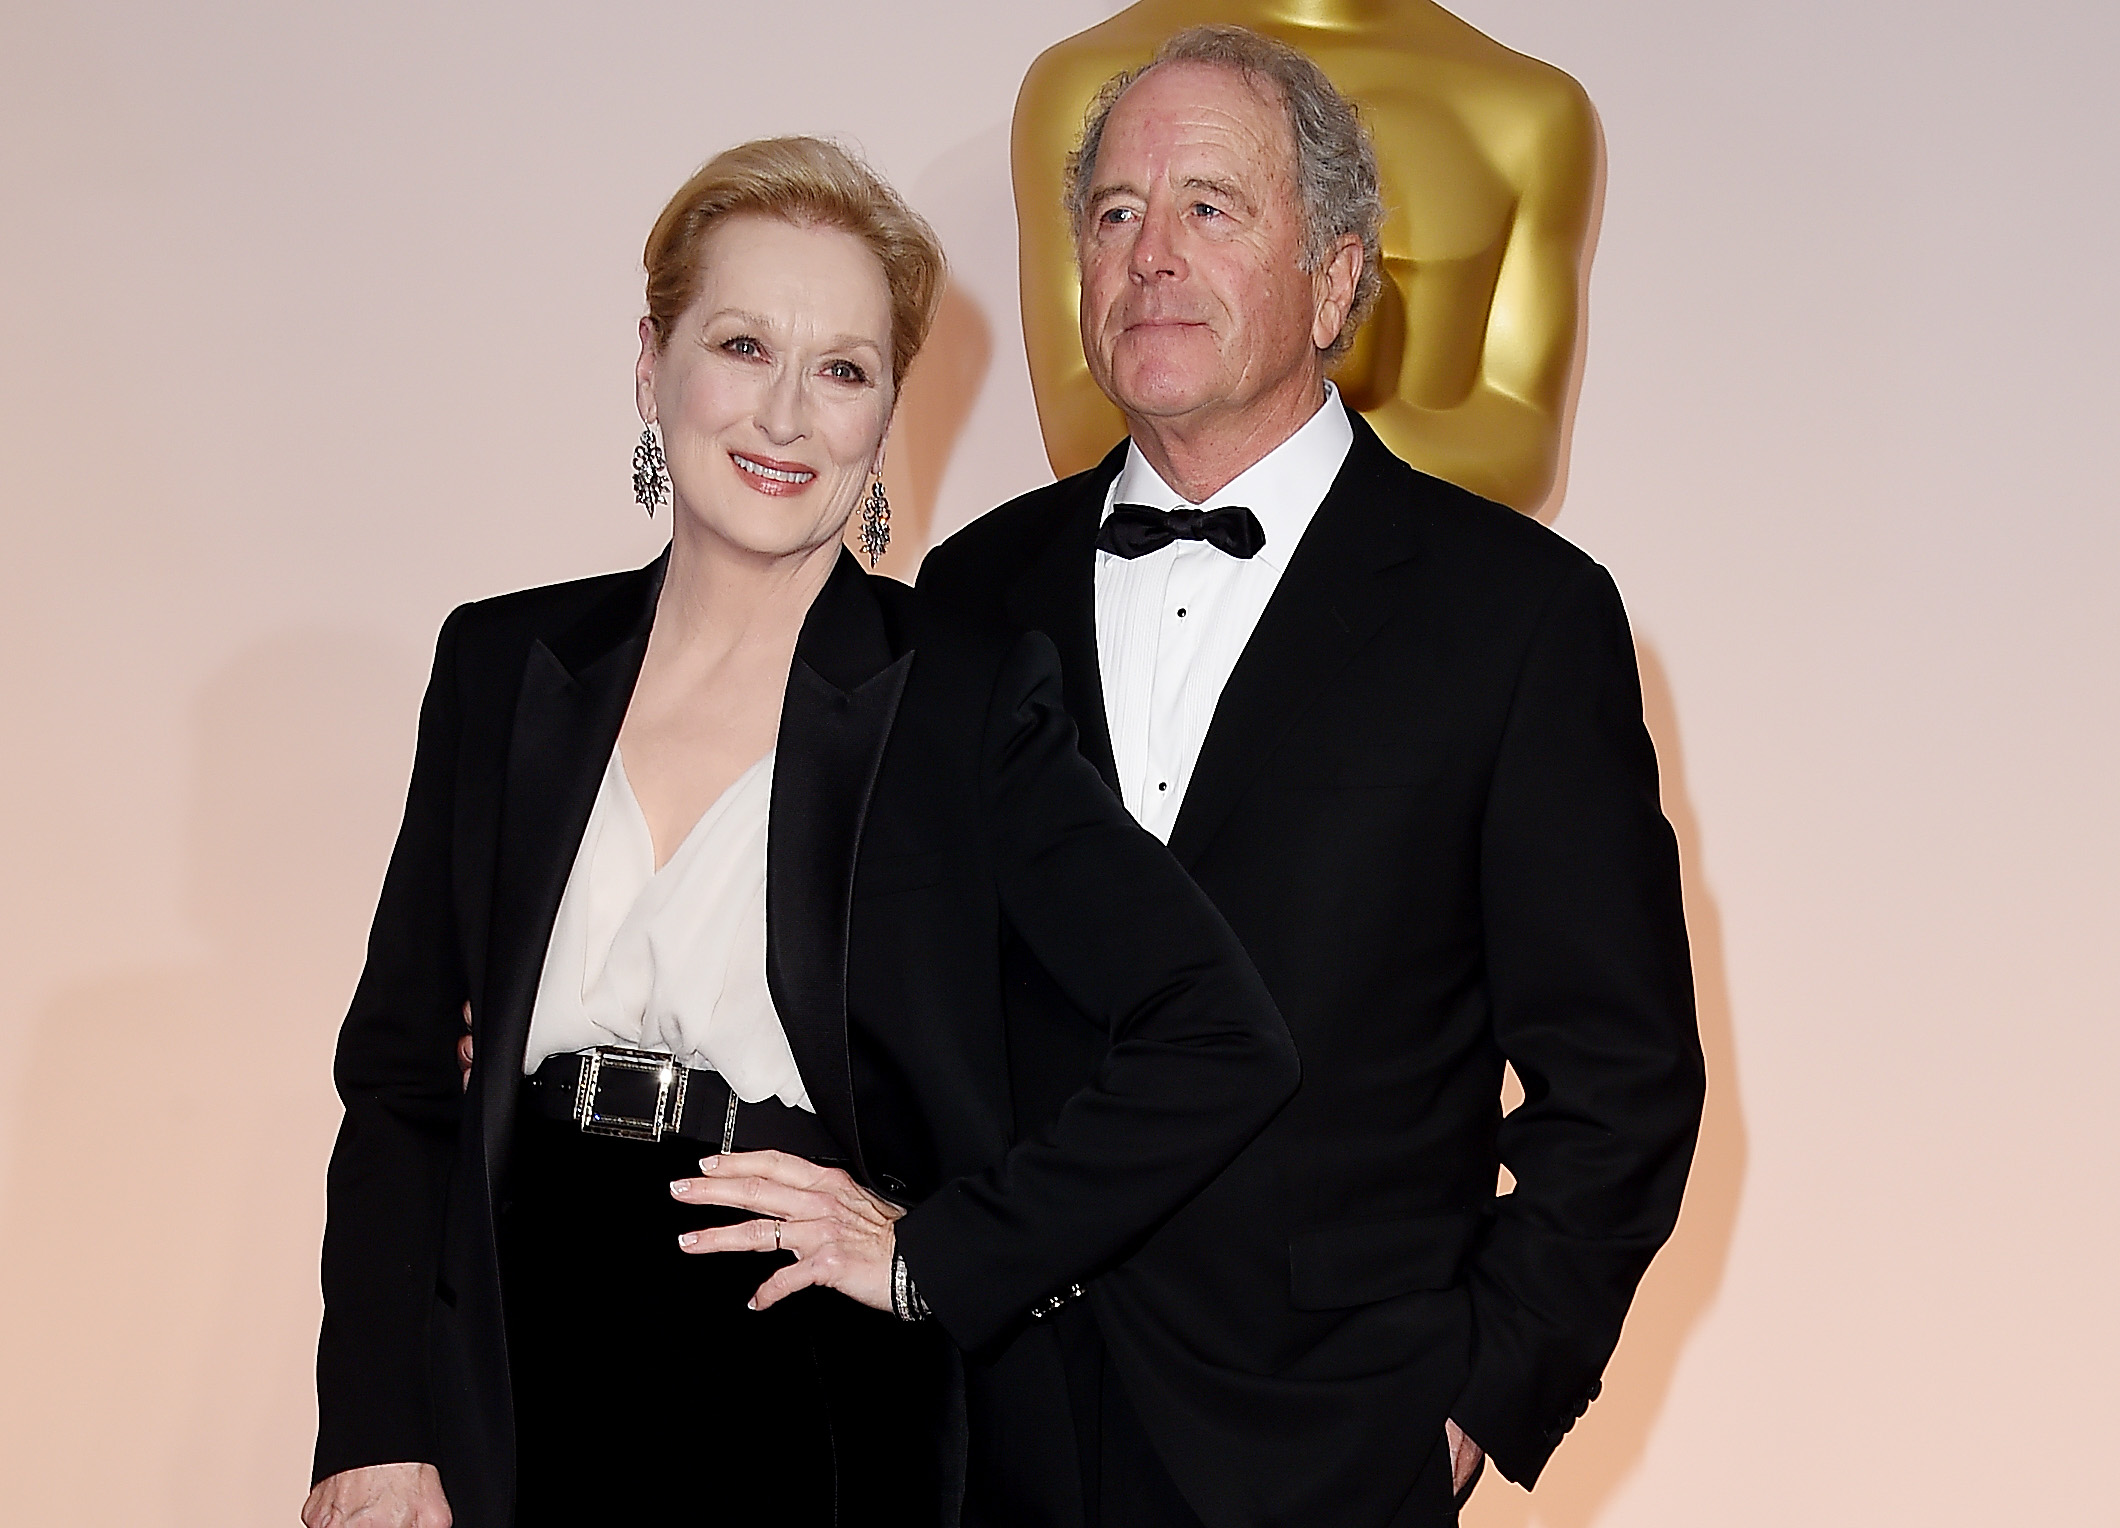 La actriz Meryl Streep y el escultor Don Gummer asisten a la 87ª edición de los Premios de la Academia en el Hollywood & Highland Center, el 22 de febrero de 2015 en Hollywood, California. | Foto: Getty Images